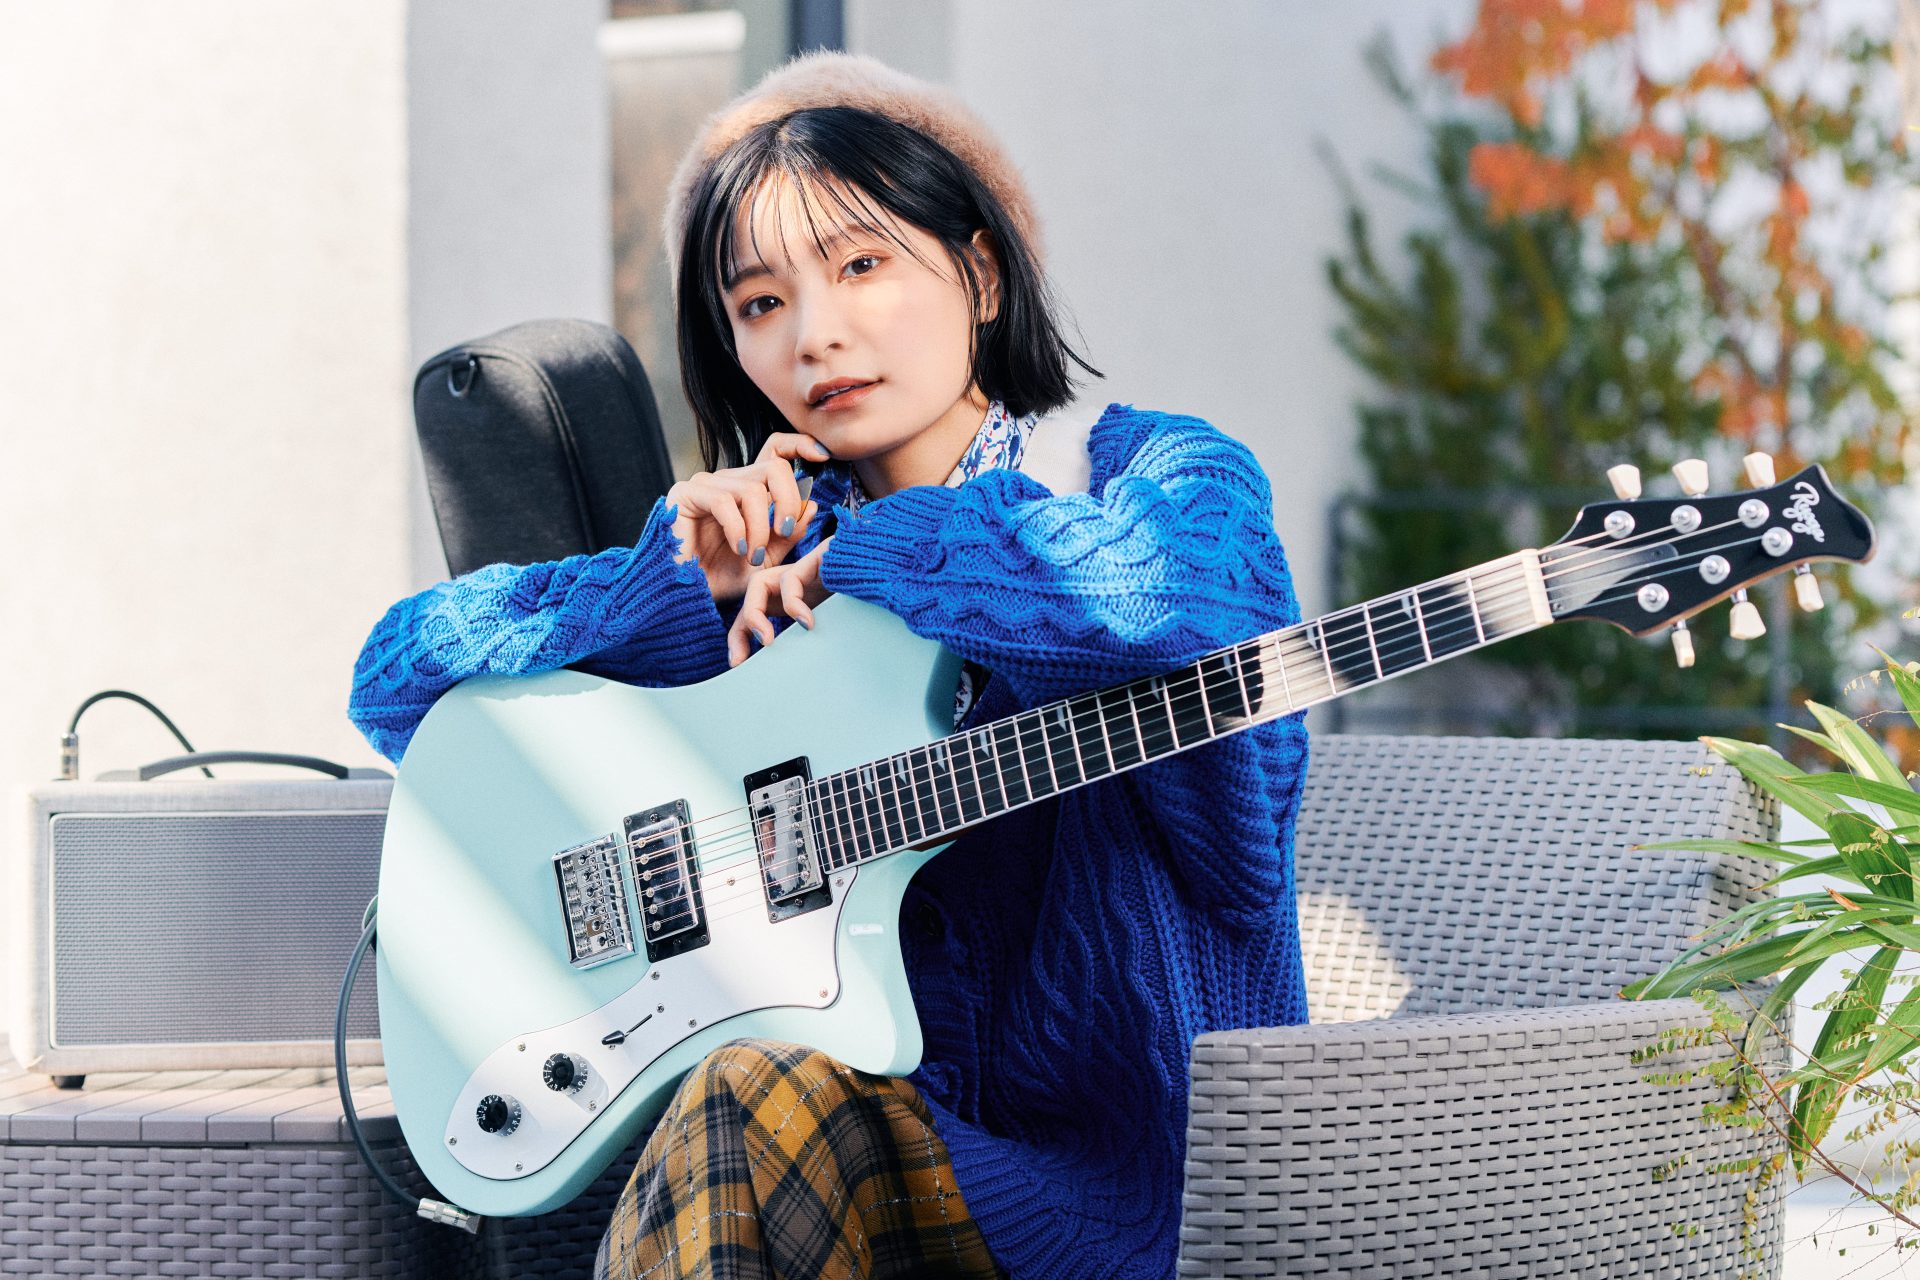 島村楽器株式会社（本社：東京都江戸川区、代表取締役社長：廣瀬利明、以下 島村楽器）は、2017年8月に立ち上げたエレキギター・ベースのブランド『Ryoga（リョウガ）』のリブランデ……